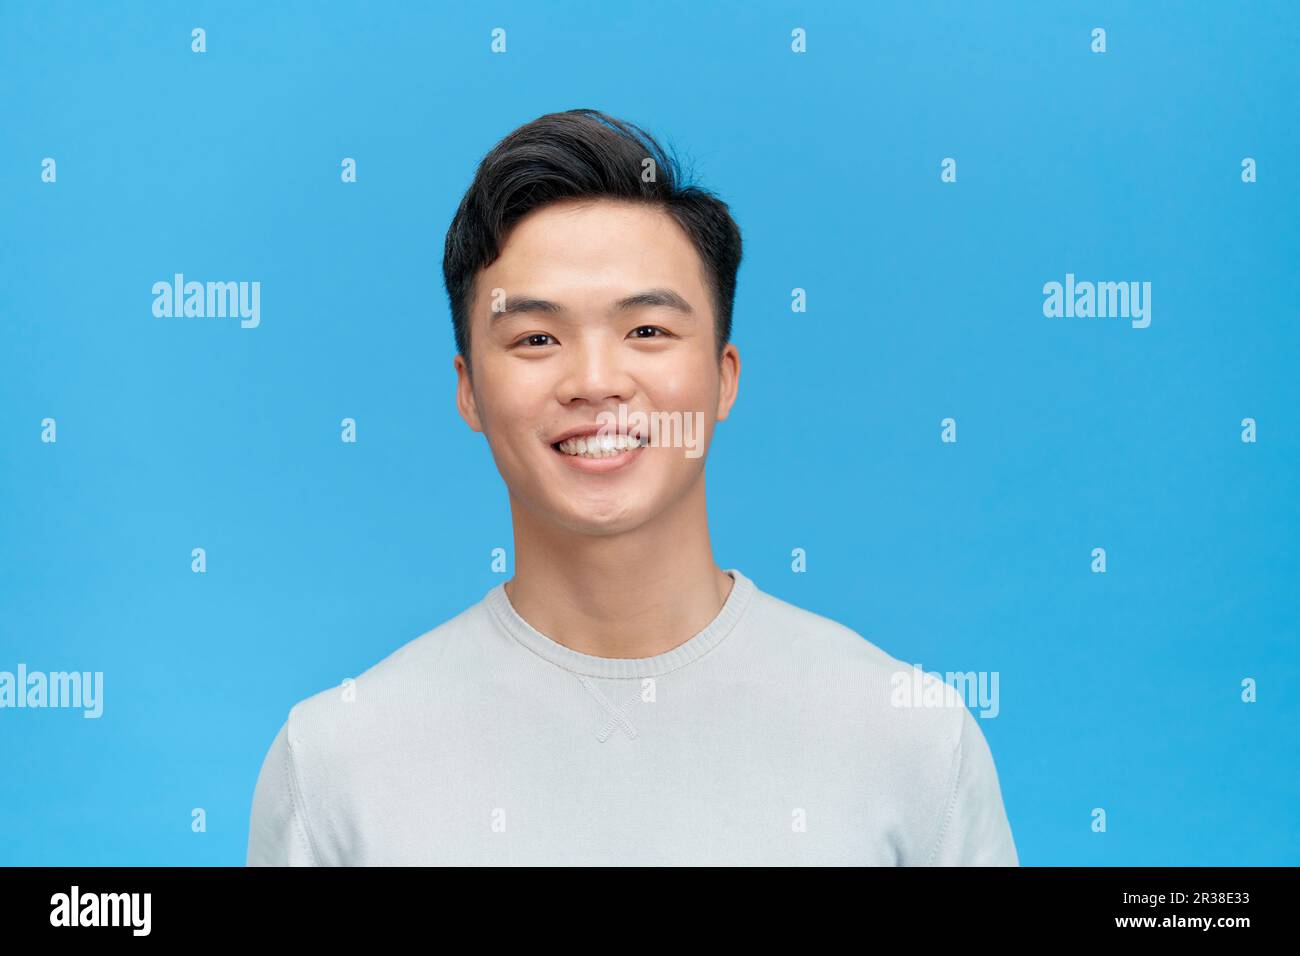 Porträt von einem gutaussehenden jungen Mann vor blauem Hintergrund lächelnd Stockfoto